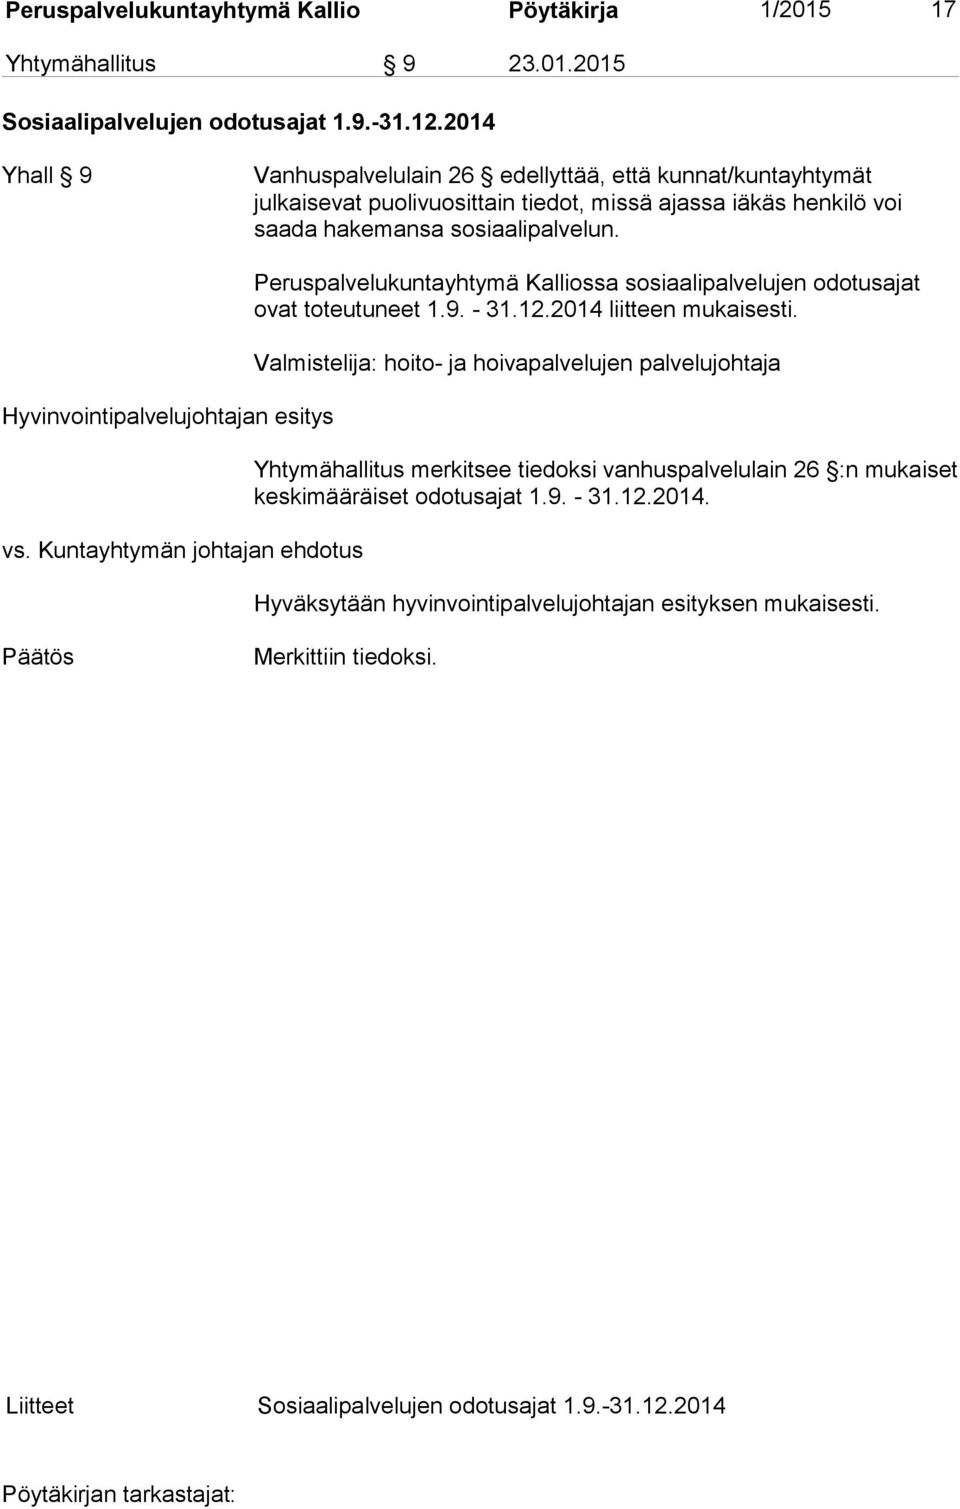 Hyvinvointipalvelujohtajan esitys Peruspalvelukuntayhtymä Kalliossa sosiaalipalvelujen odotusajat ovat toteutuneet 1.9. - 31.12.2014 liitteen mukaisesti.